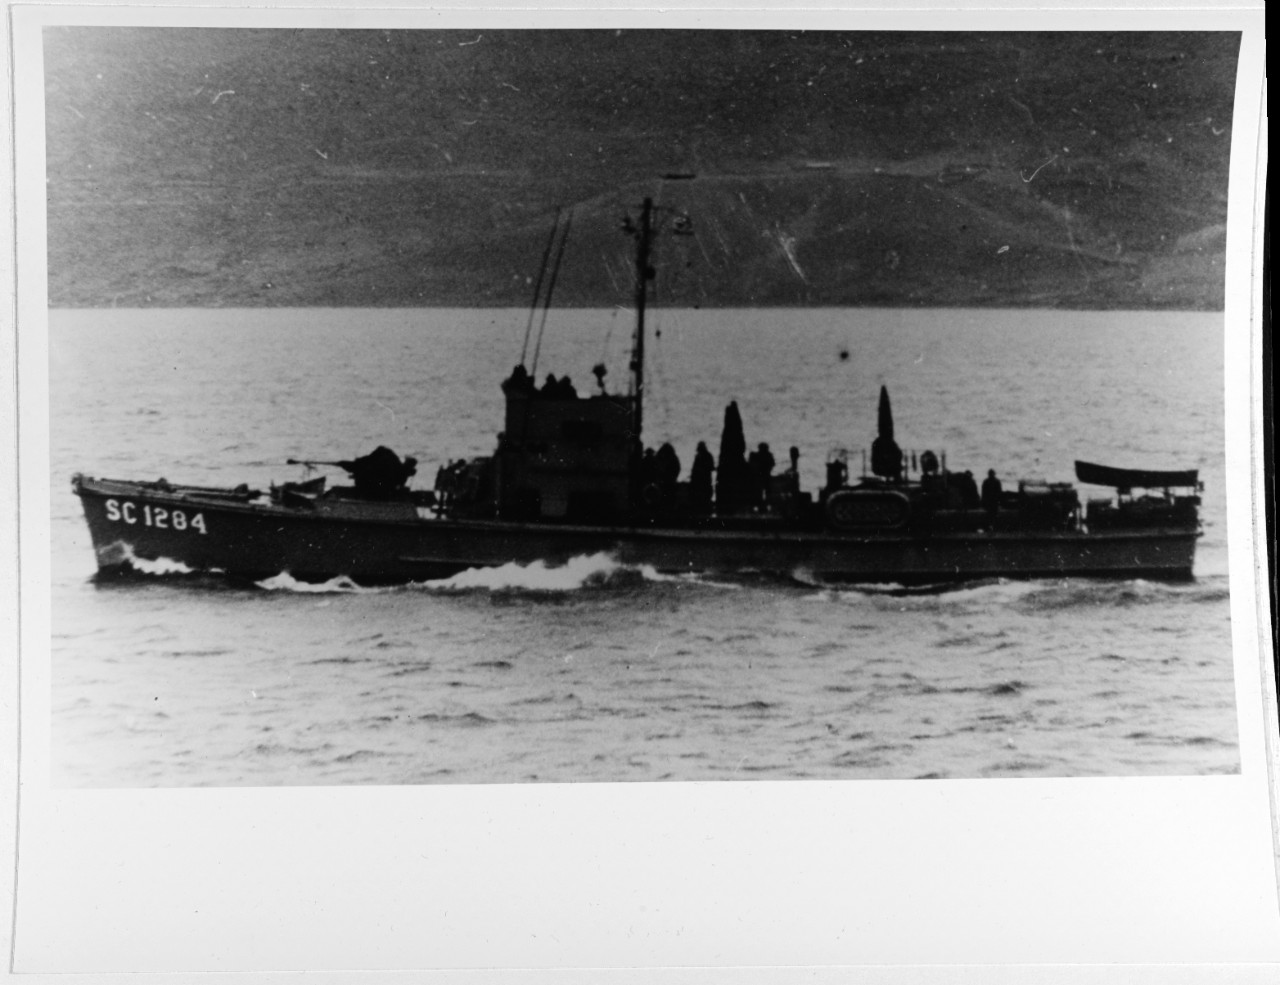 USS SC-1284